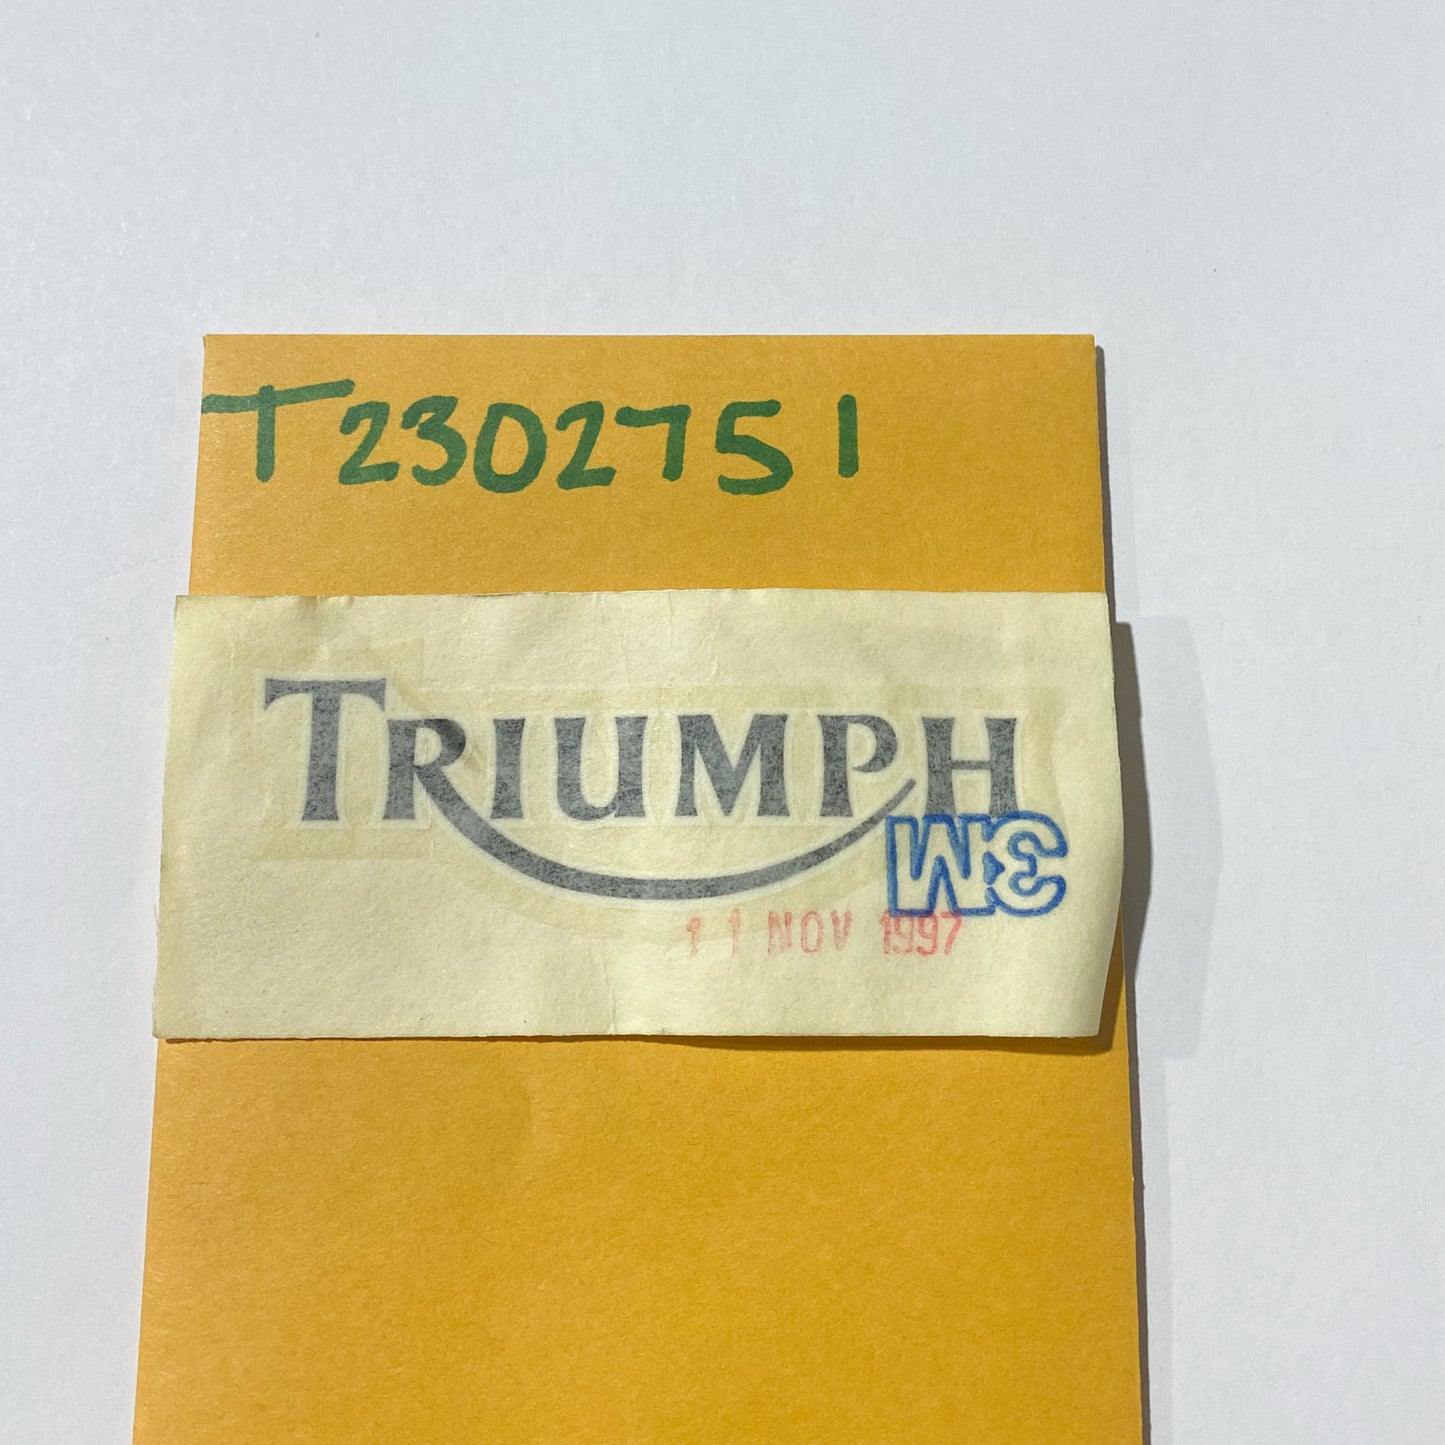 TRIUMPH - DECAL, SEAT CAP T2302751